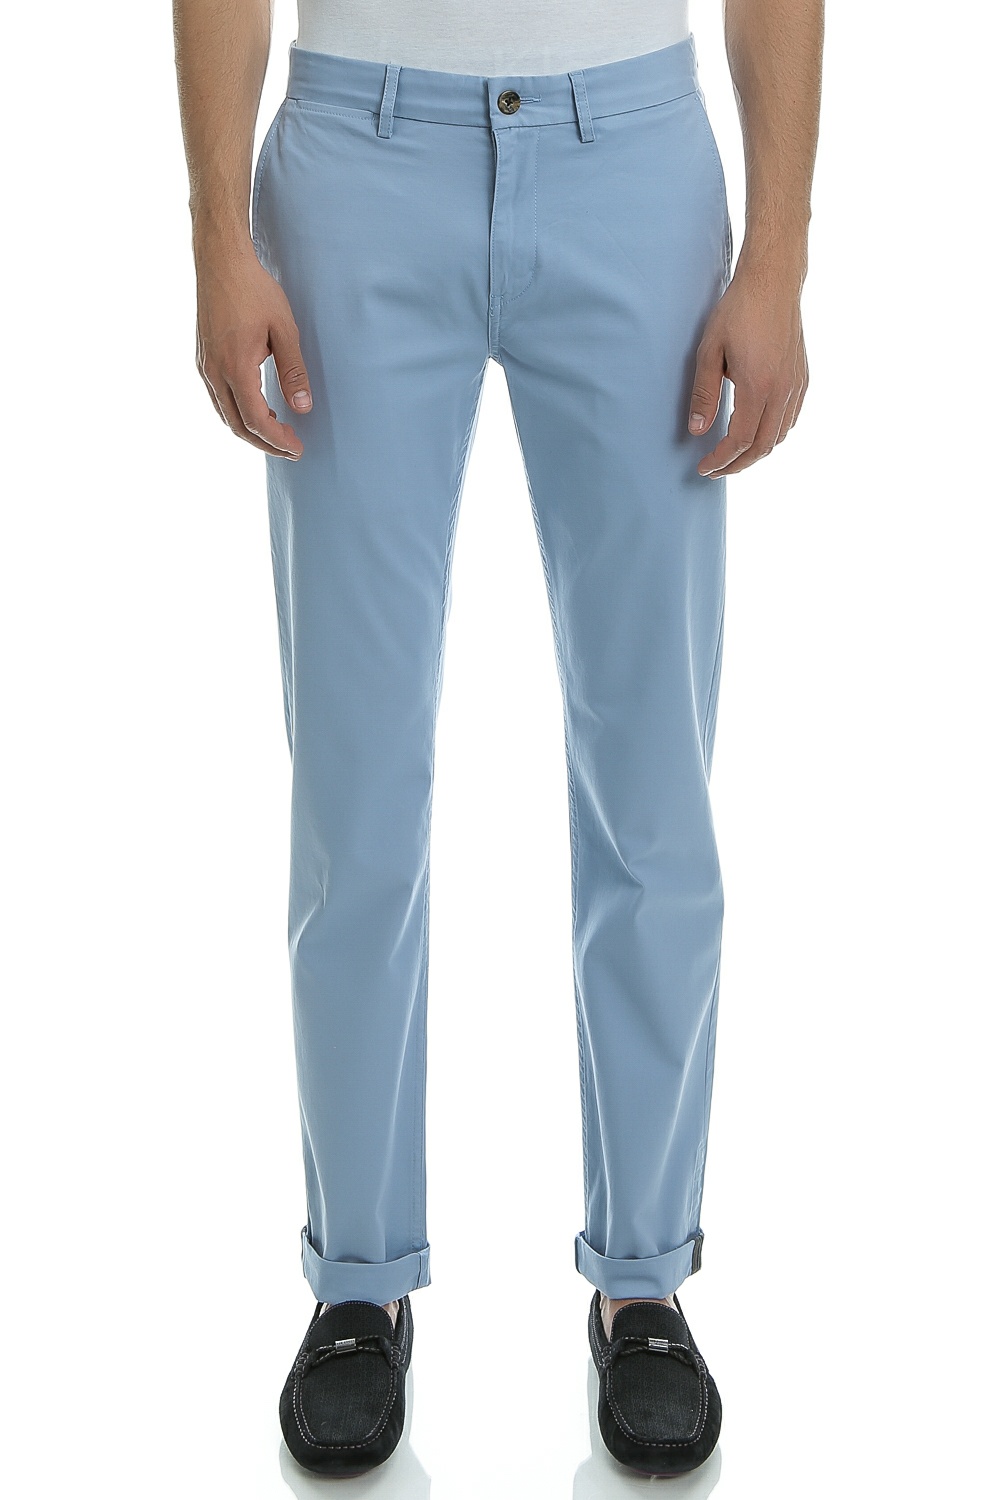 Ανδρικά/Ρούχα/Παντελόνια/Chinos BEN SHERMAN - Ανδρικό παντελόνι Ben Sherman μπλε